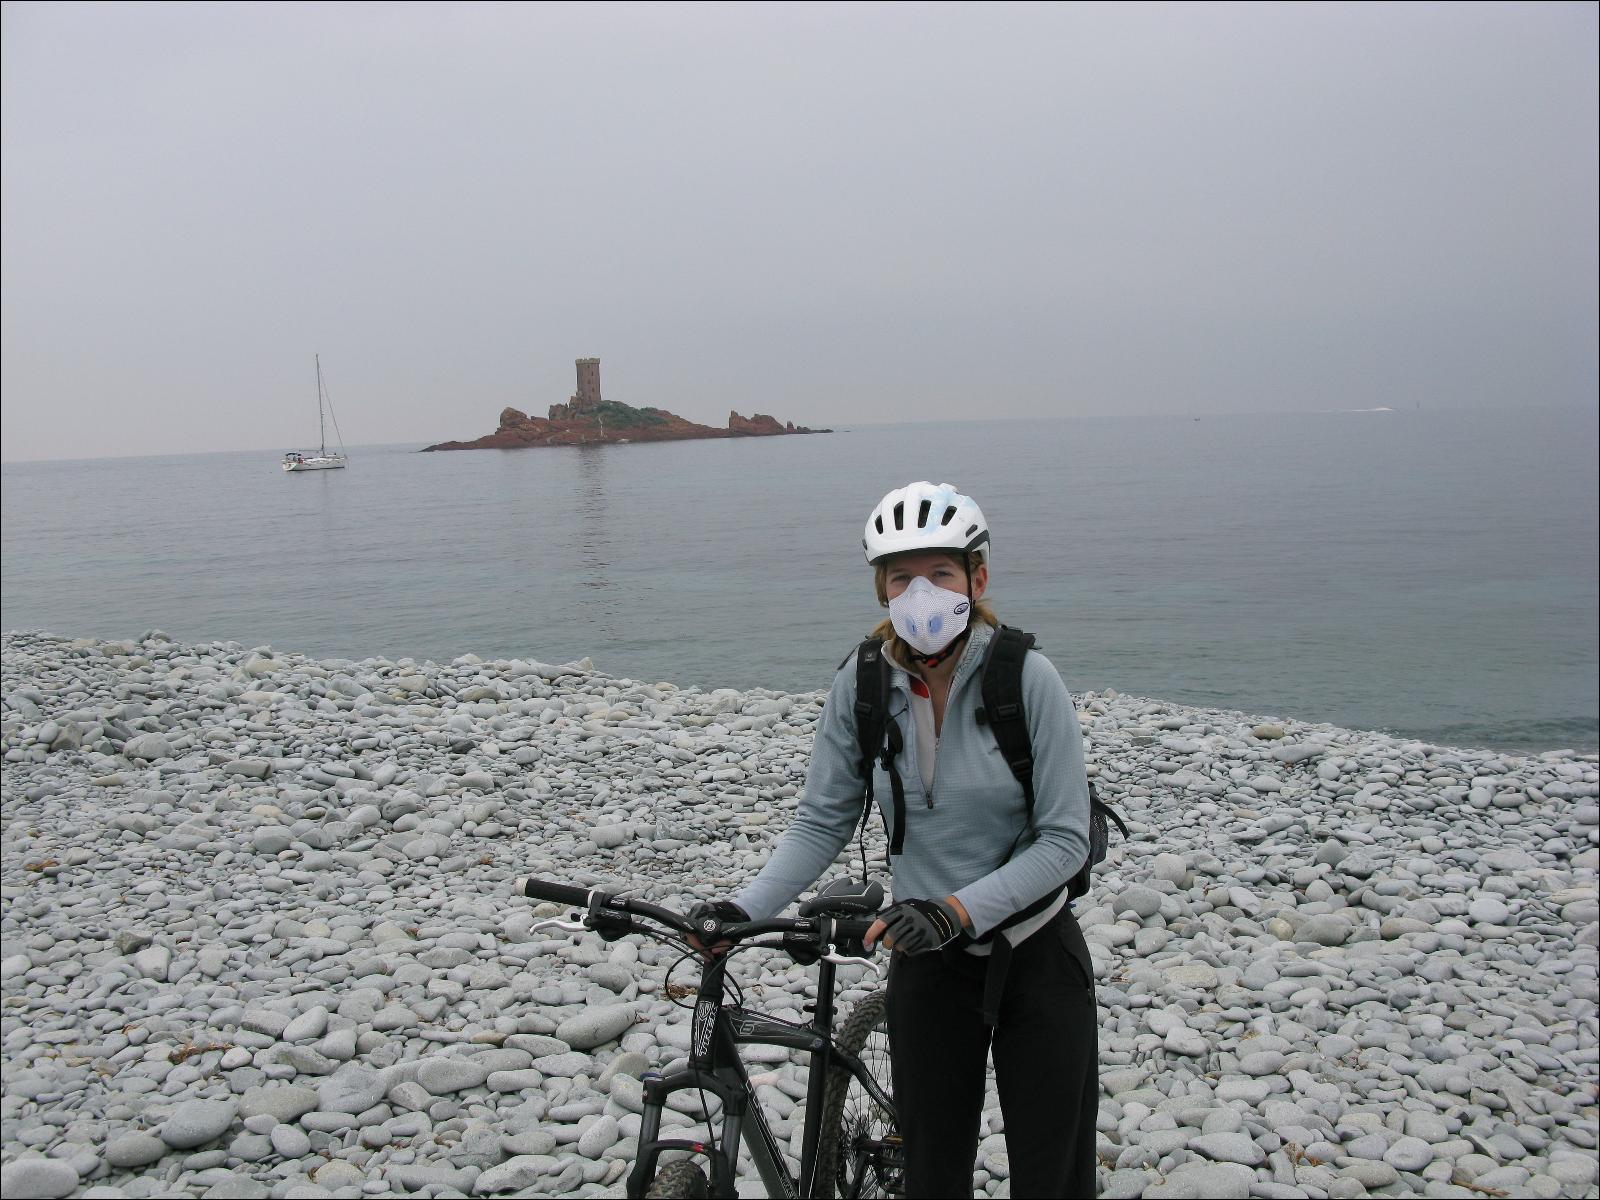 Avis et test du masque antipollution Respro Sport pour le vélo